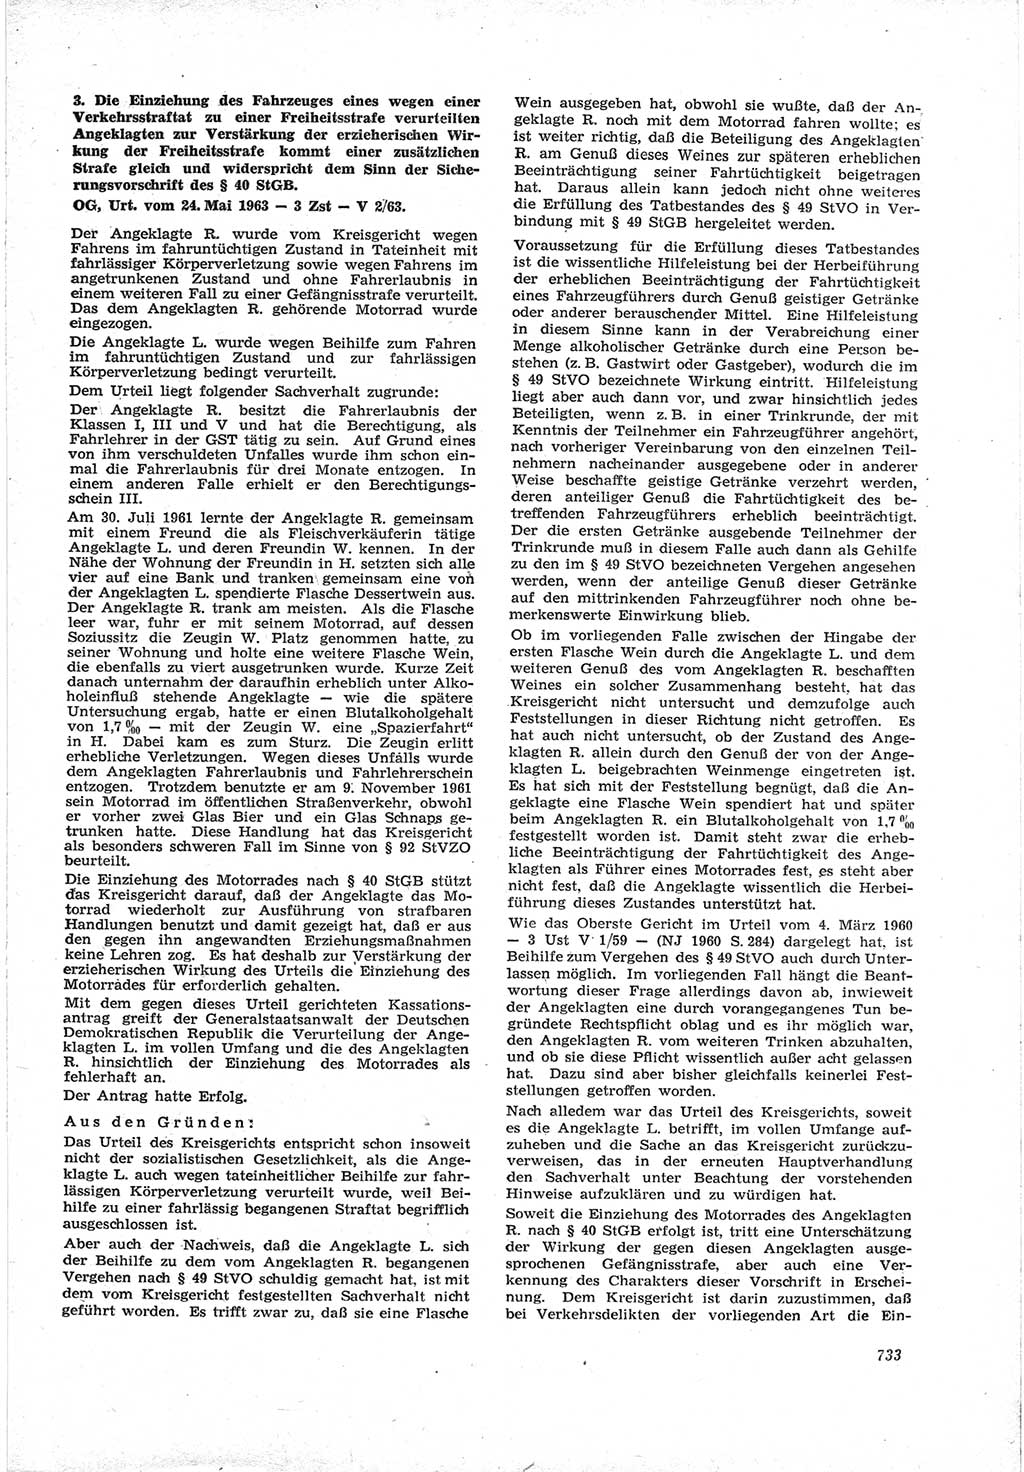 Neue Justiz (NJ), Zeitschrift für Recht und Rechtswissenschaft [Deutsche Demokratische Republik (DDR)], 17. Jahrgang 1963, Seite 733 (NJ DDR 1963, S. 733)